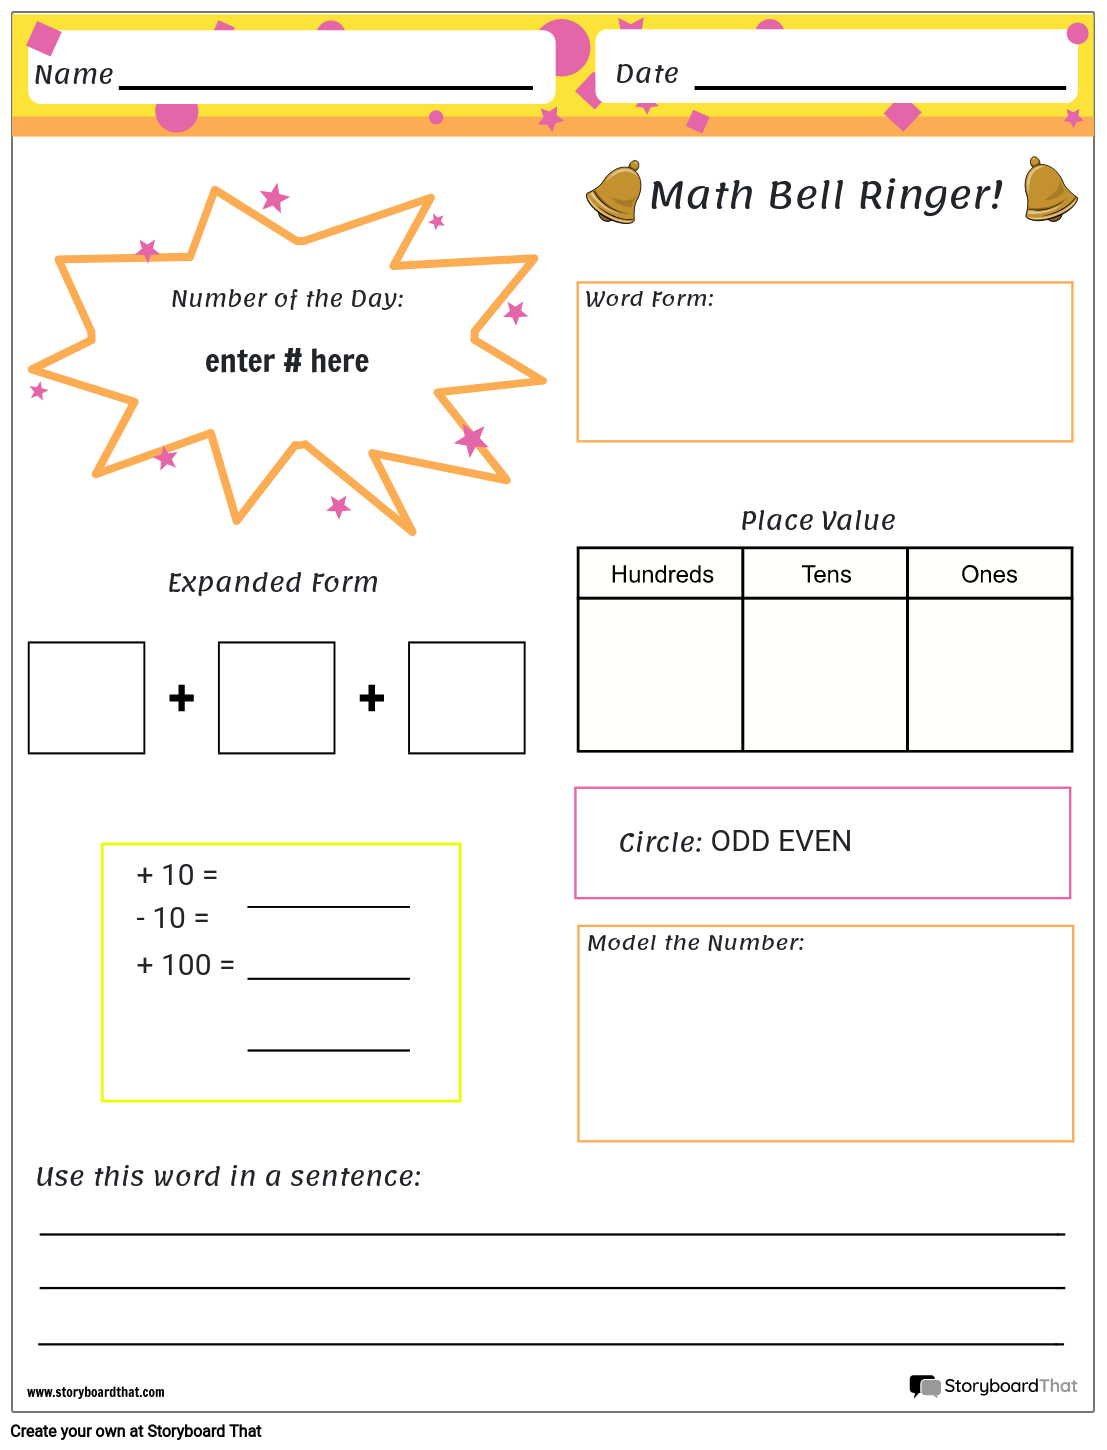 Basic Maths Bell Ringer Practice Sheet